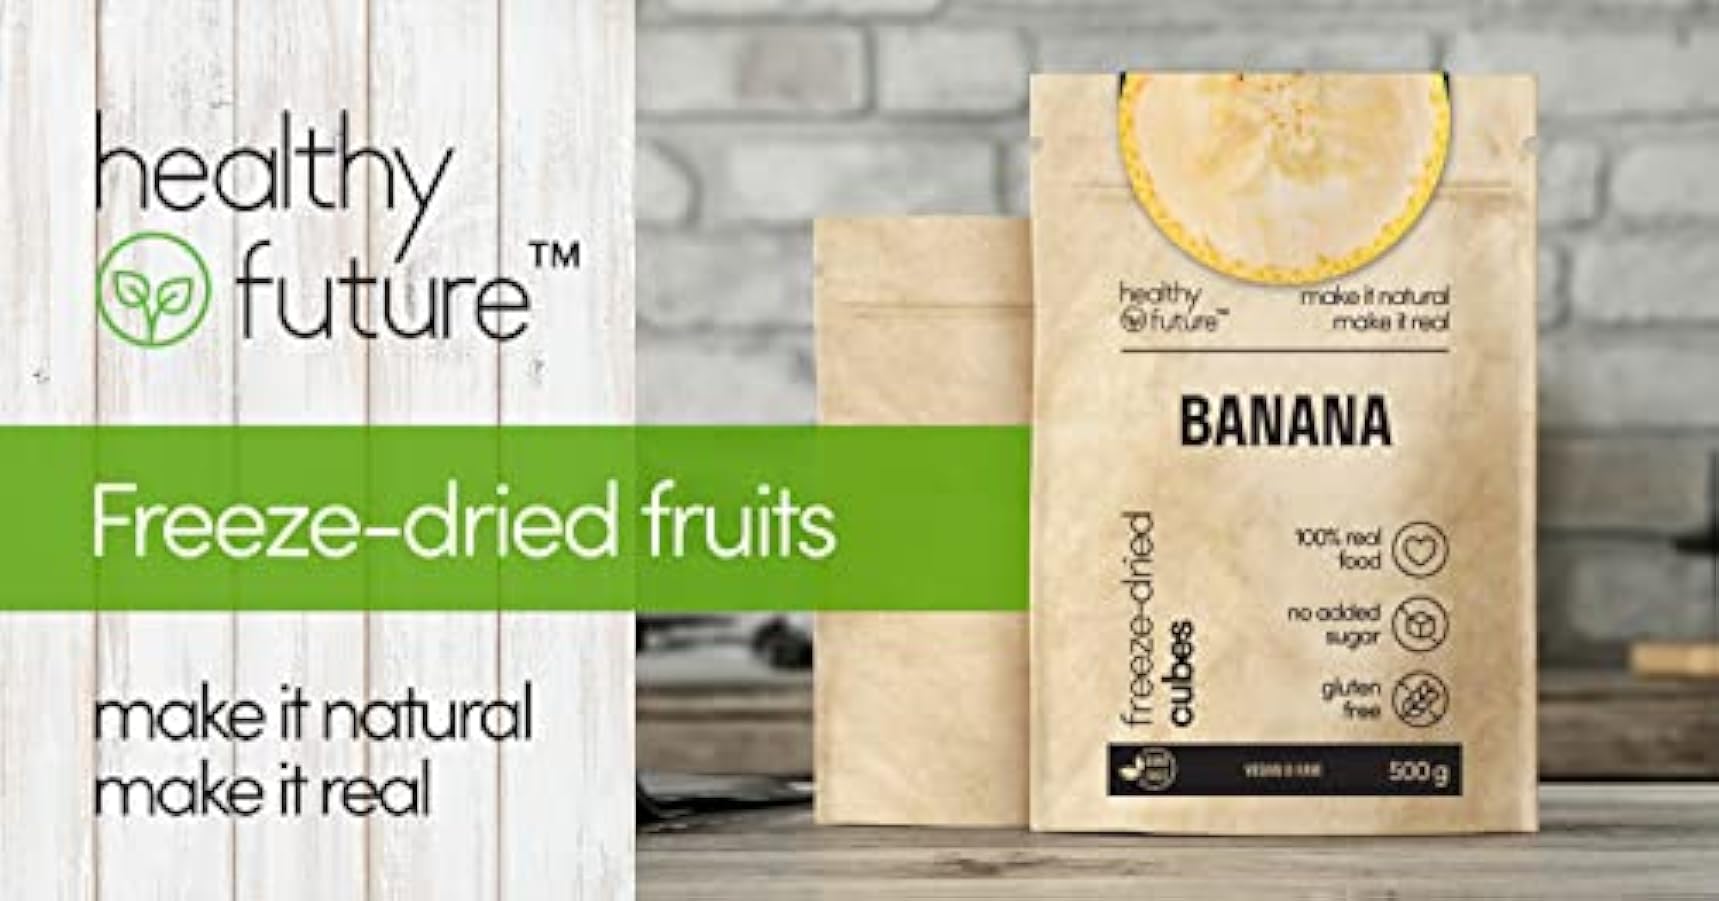 Healthy Future | Banane liofilizzate | Cubetti di frutta liofilizzata, non irradiata | 100% naturale, vegana, kosher | senza glutine, zolfo, conservanti, zuccheri aggiunti, OGM | 1 confezione da 500 g 376833686